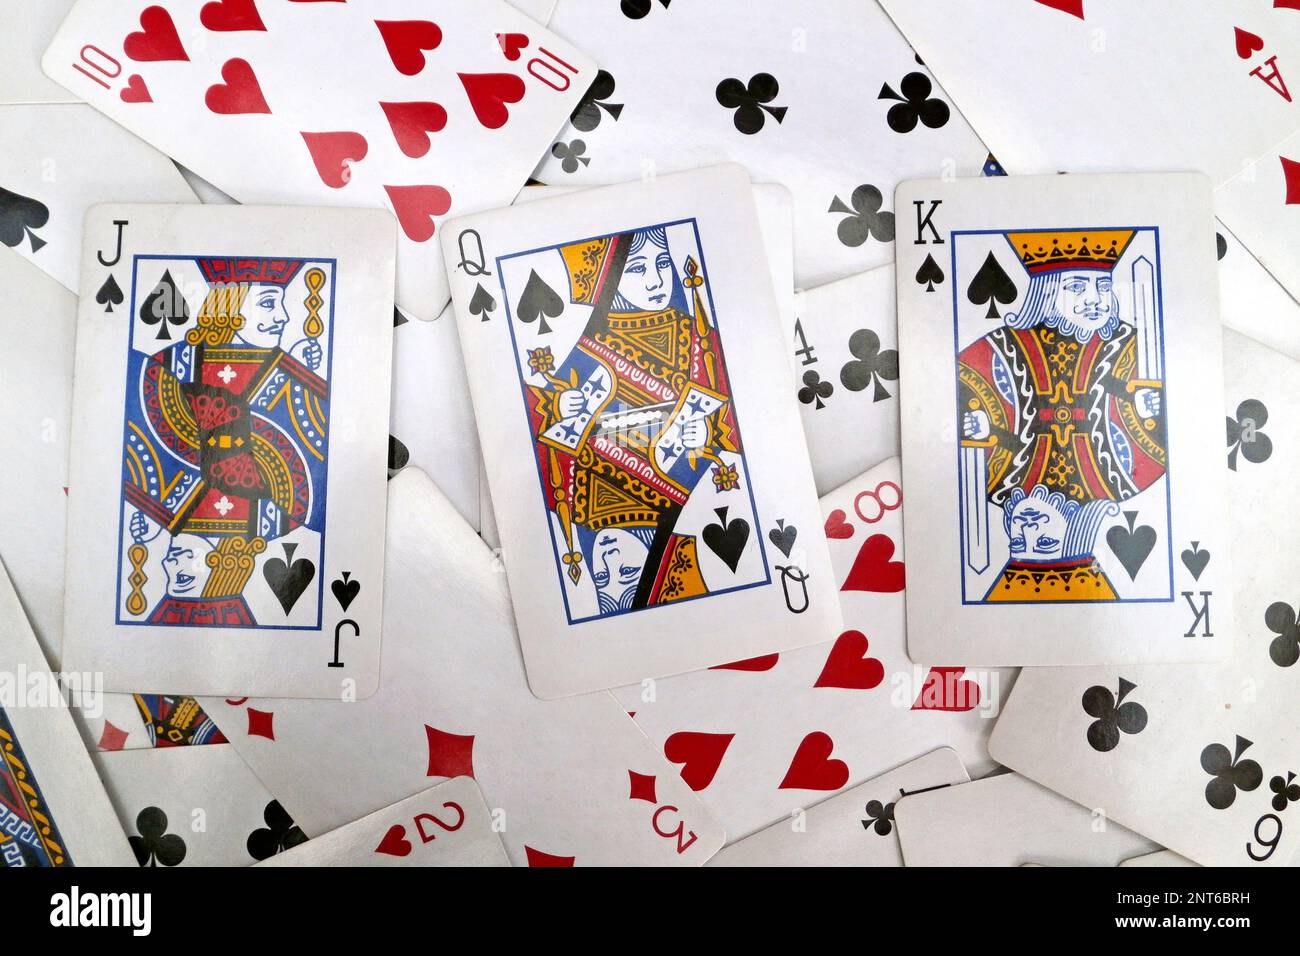 Pile de cartes à jouer avec sur le dessus, le cric, la reine, et le roi de la bêche Banque D'Images